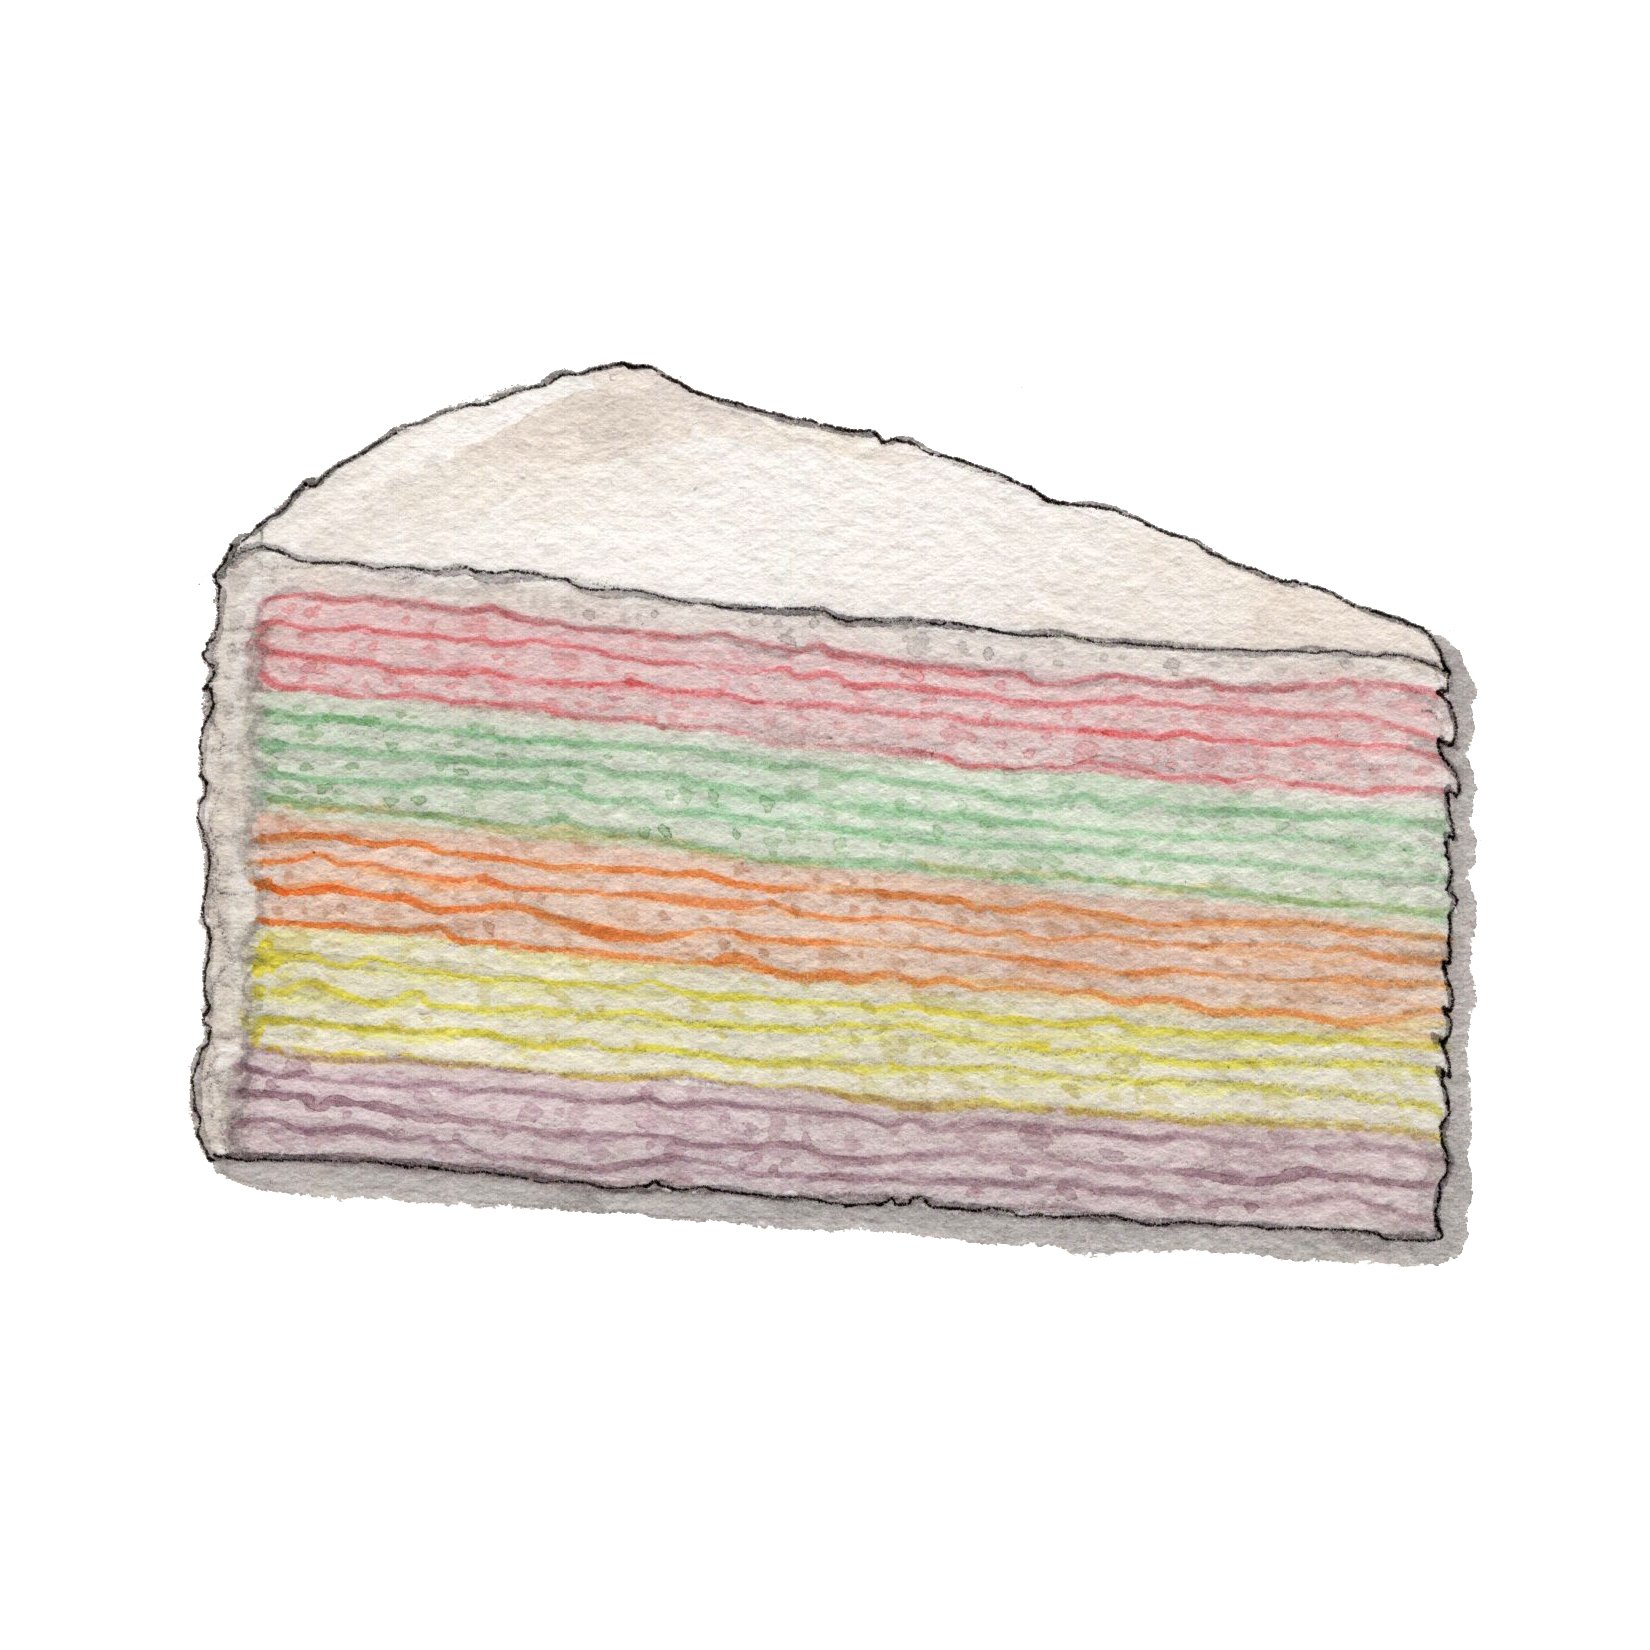 Rainbow Crepe Cake.jpg